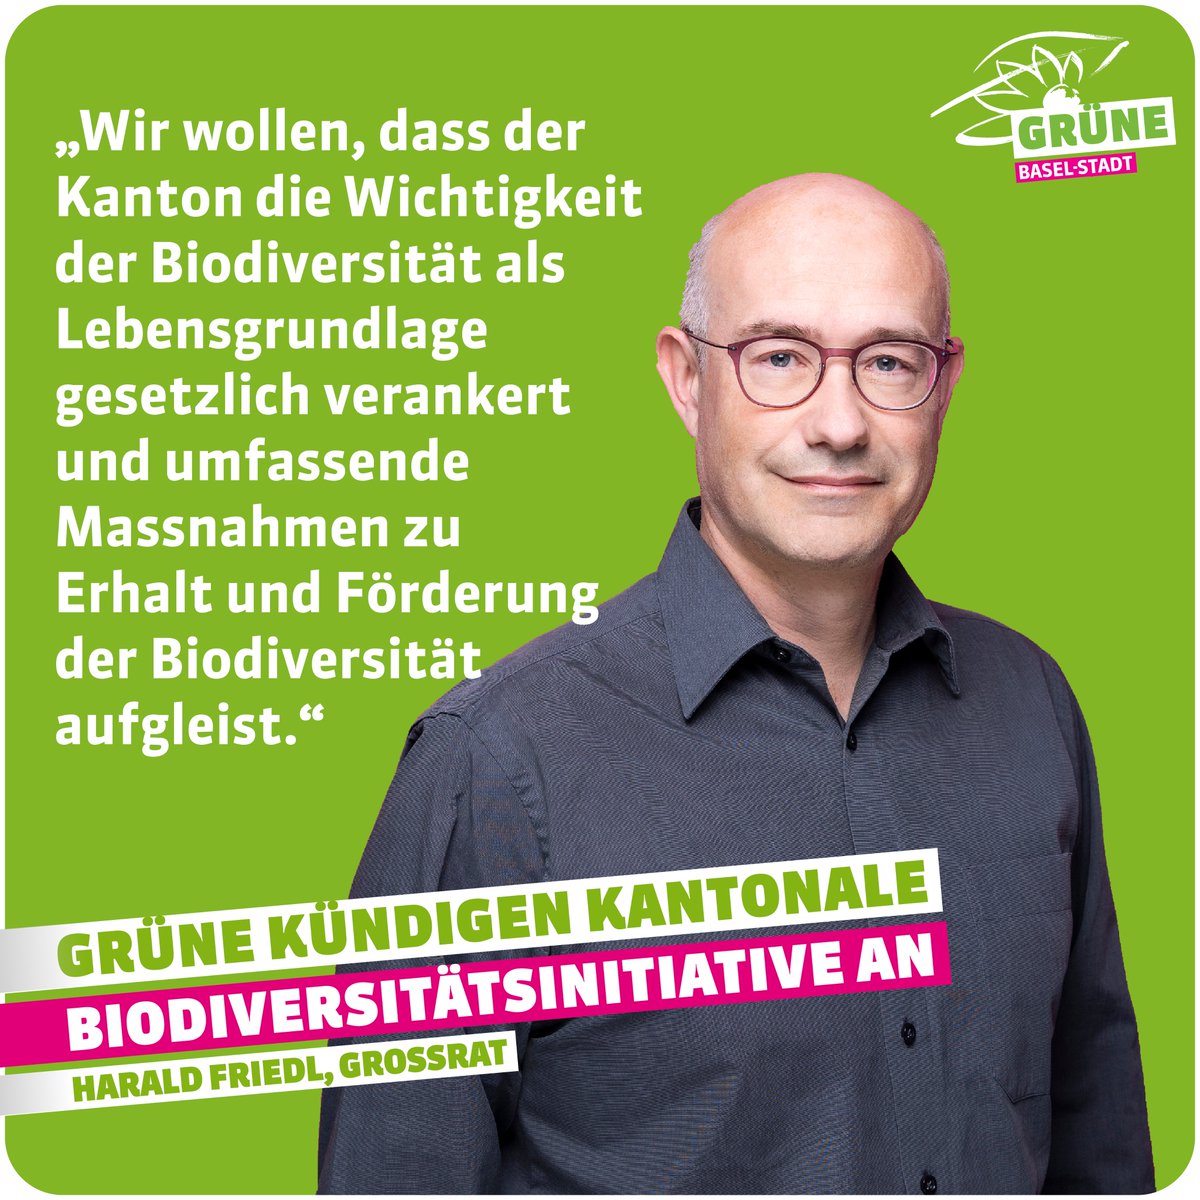 Tag der Biodiversität: Wir kündigen kantonale Biodiversitätsinitiative an!
gruene-bs.ch/vorstoesse/tag…